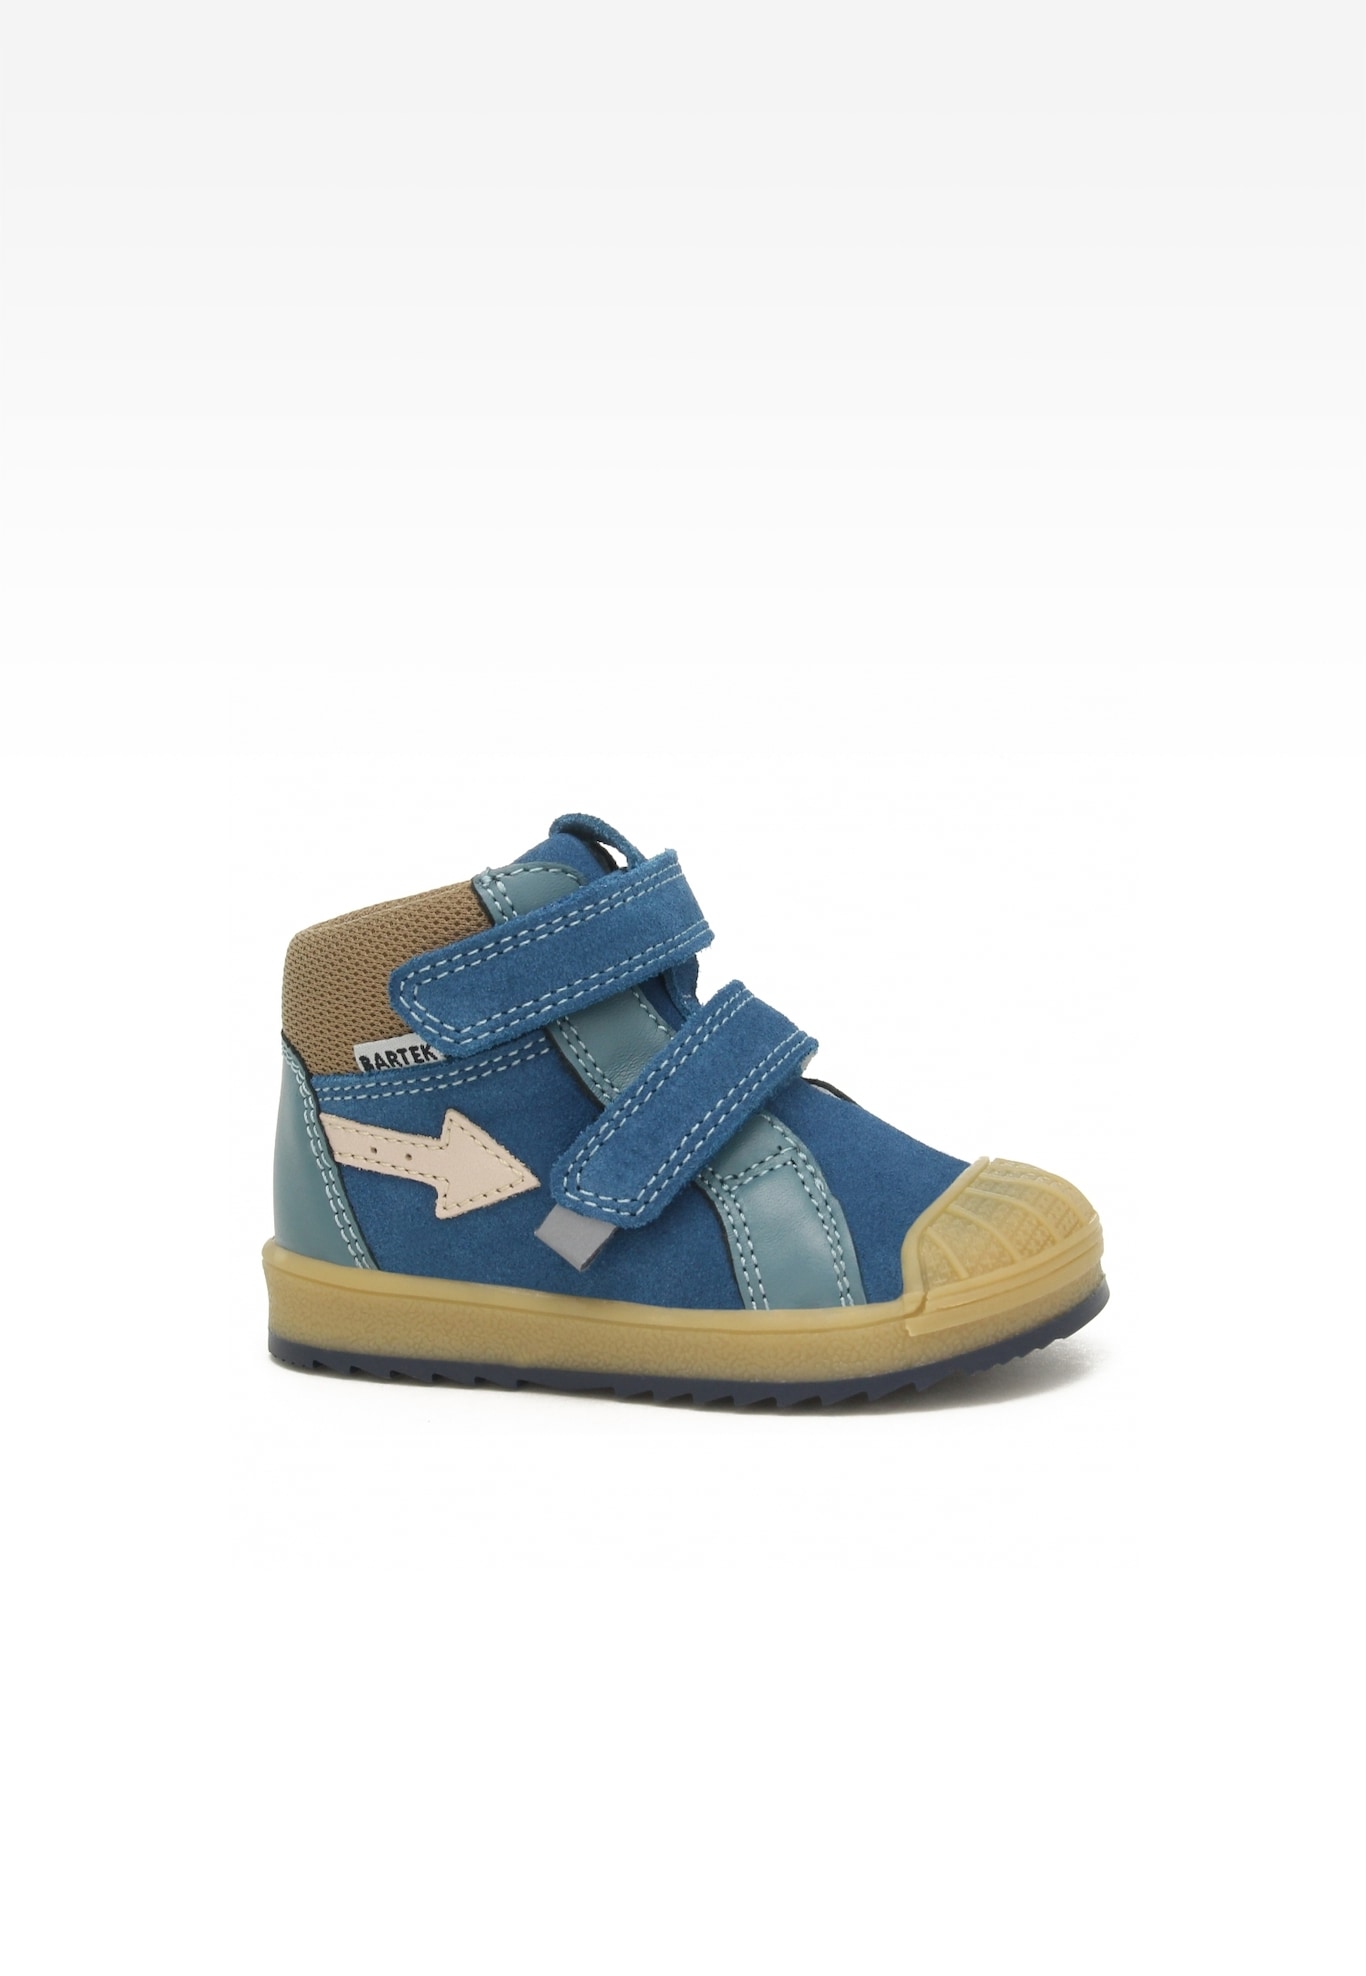 Sneakers BARTEK 11948041, niebiesko-beżowy